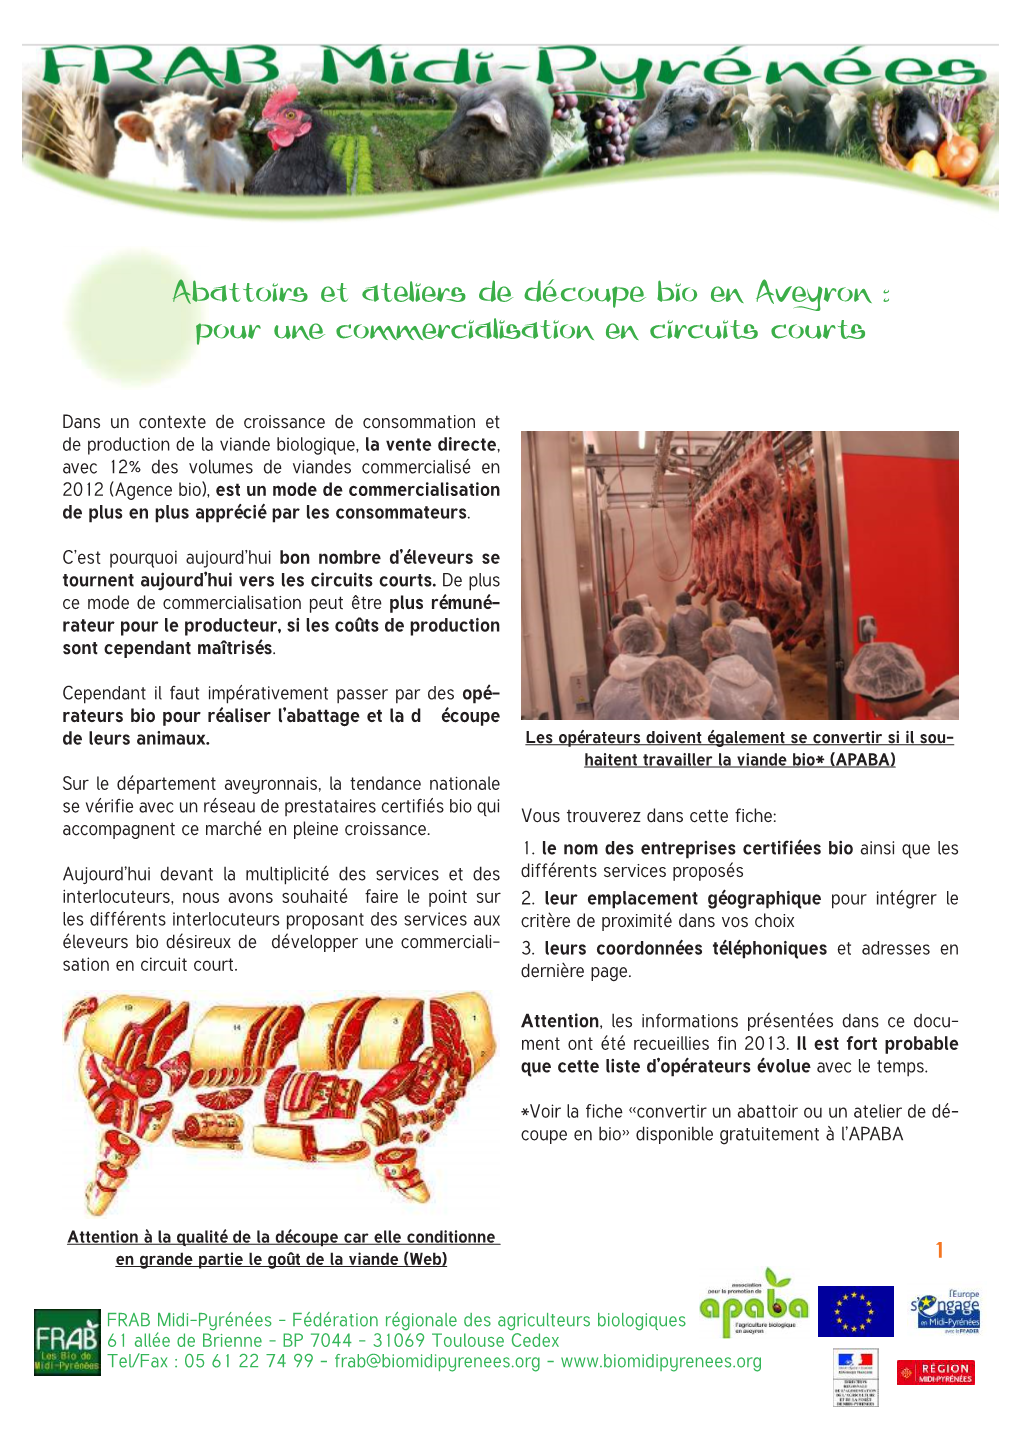 Abattoirs Et Ateliers De Découpe Bio En Aveyron : Pour Une Commercialisation En Circuits Courts